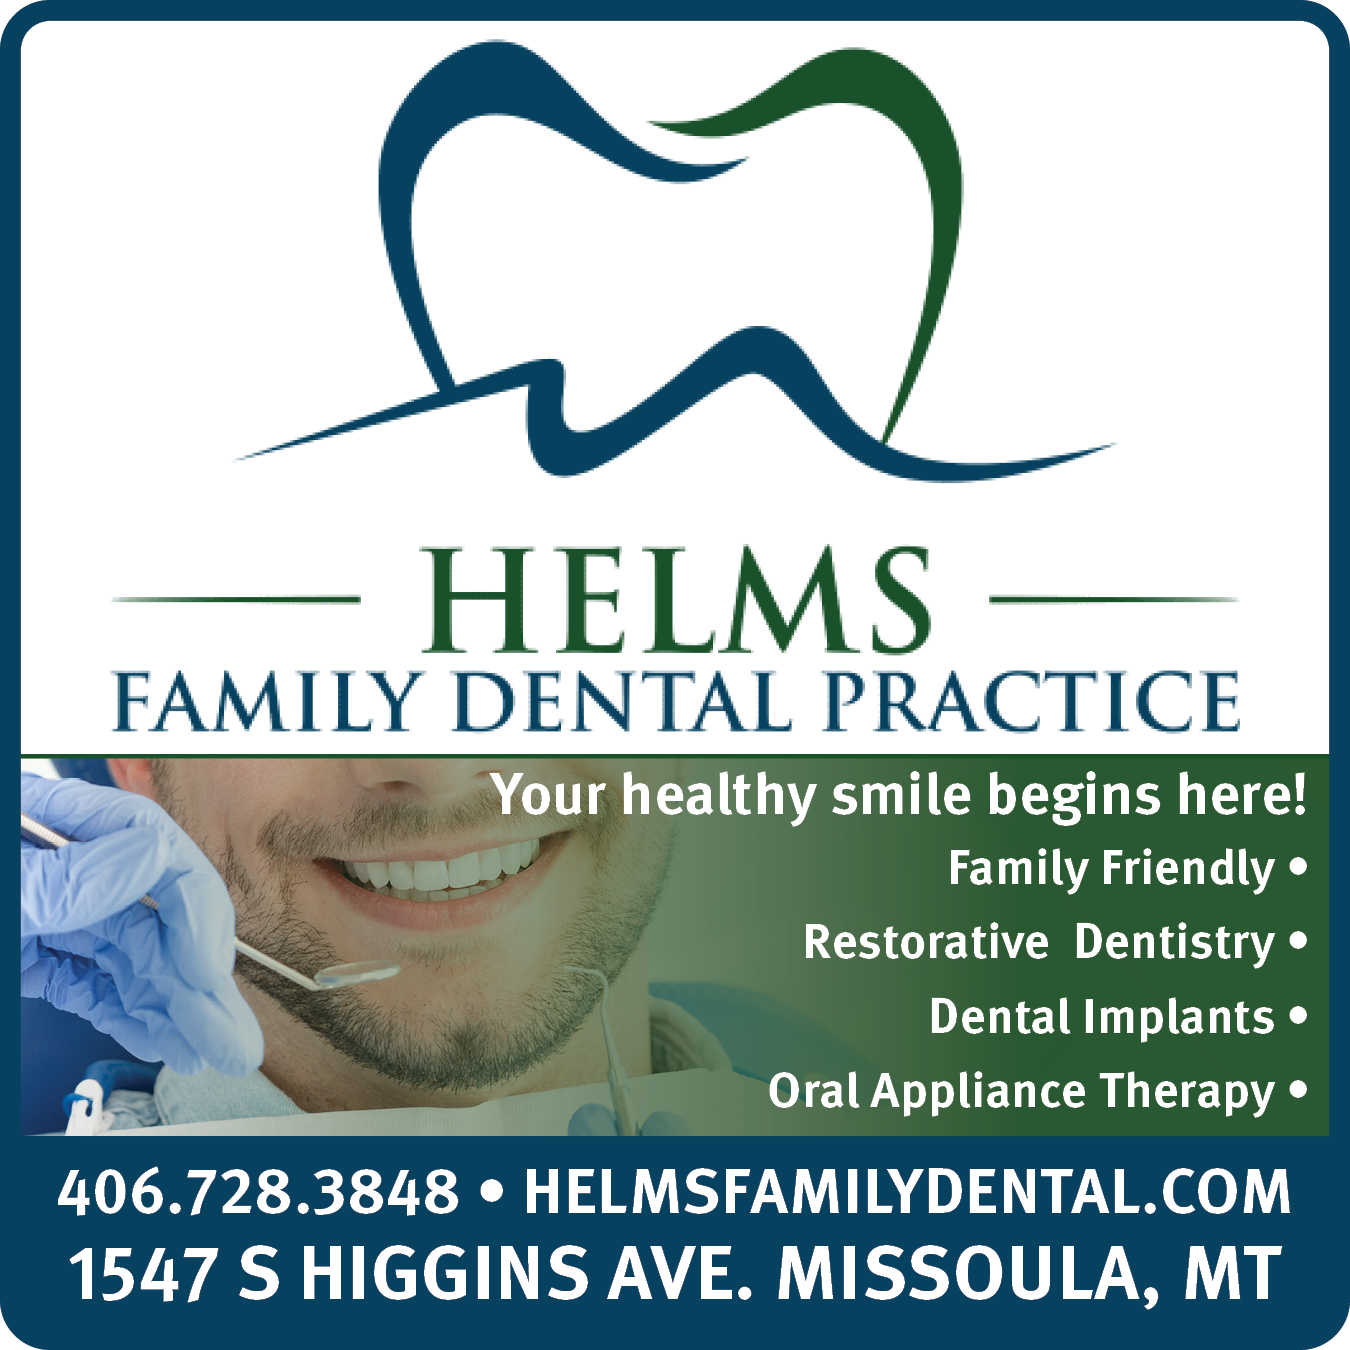 Helms Family Dental Practice